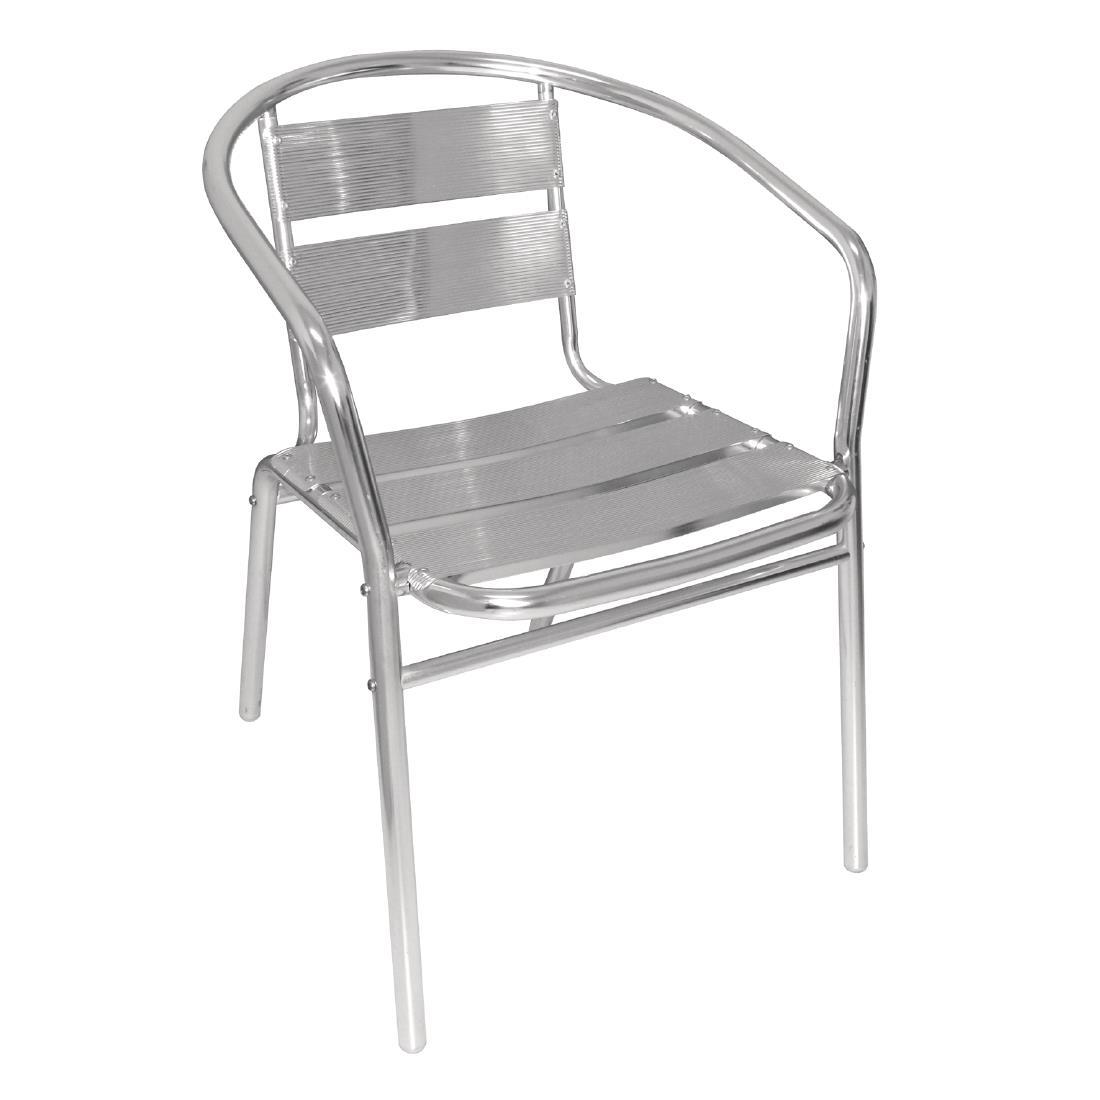 Bolero Aluminium Stacking Chairs (Pack of 4) - U419  - 2